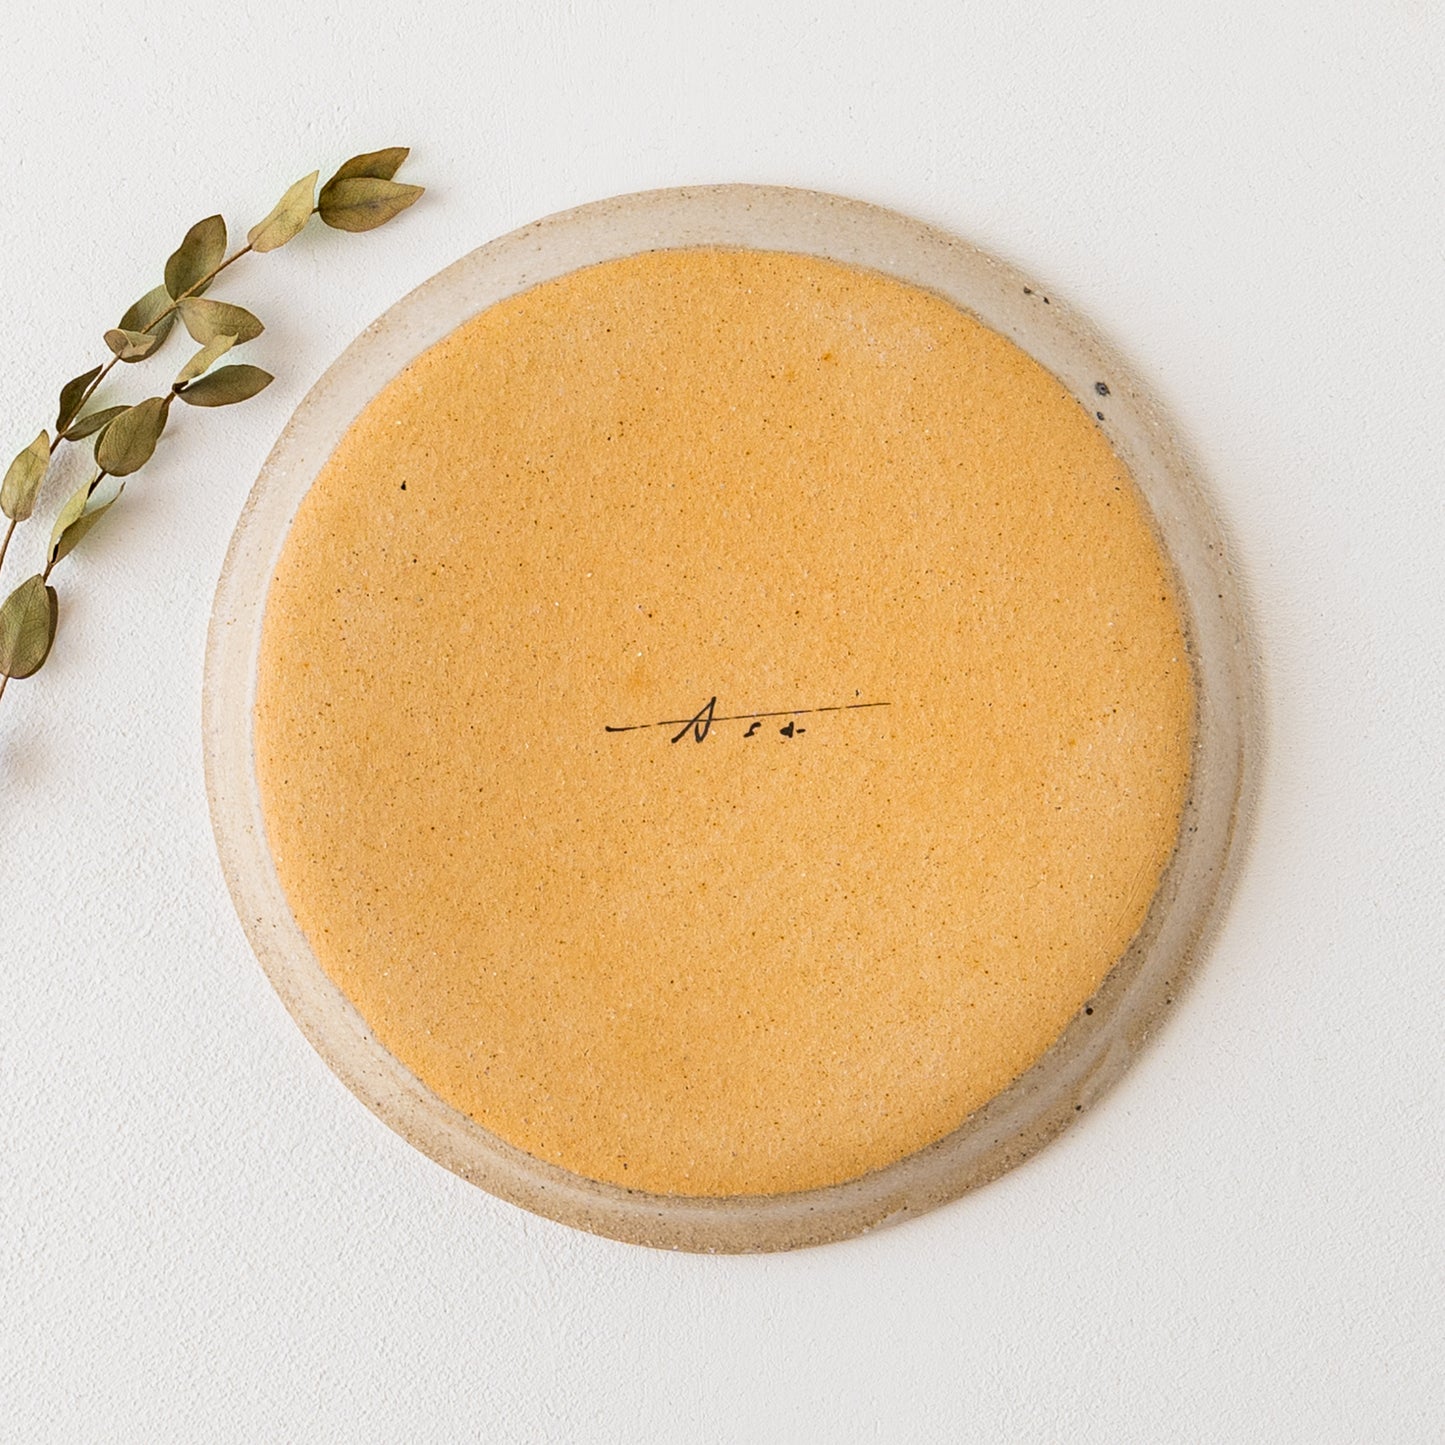 食卓を明るく彩ってくれる岡村朝子さんのお花模様の丸皿